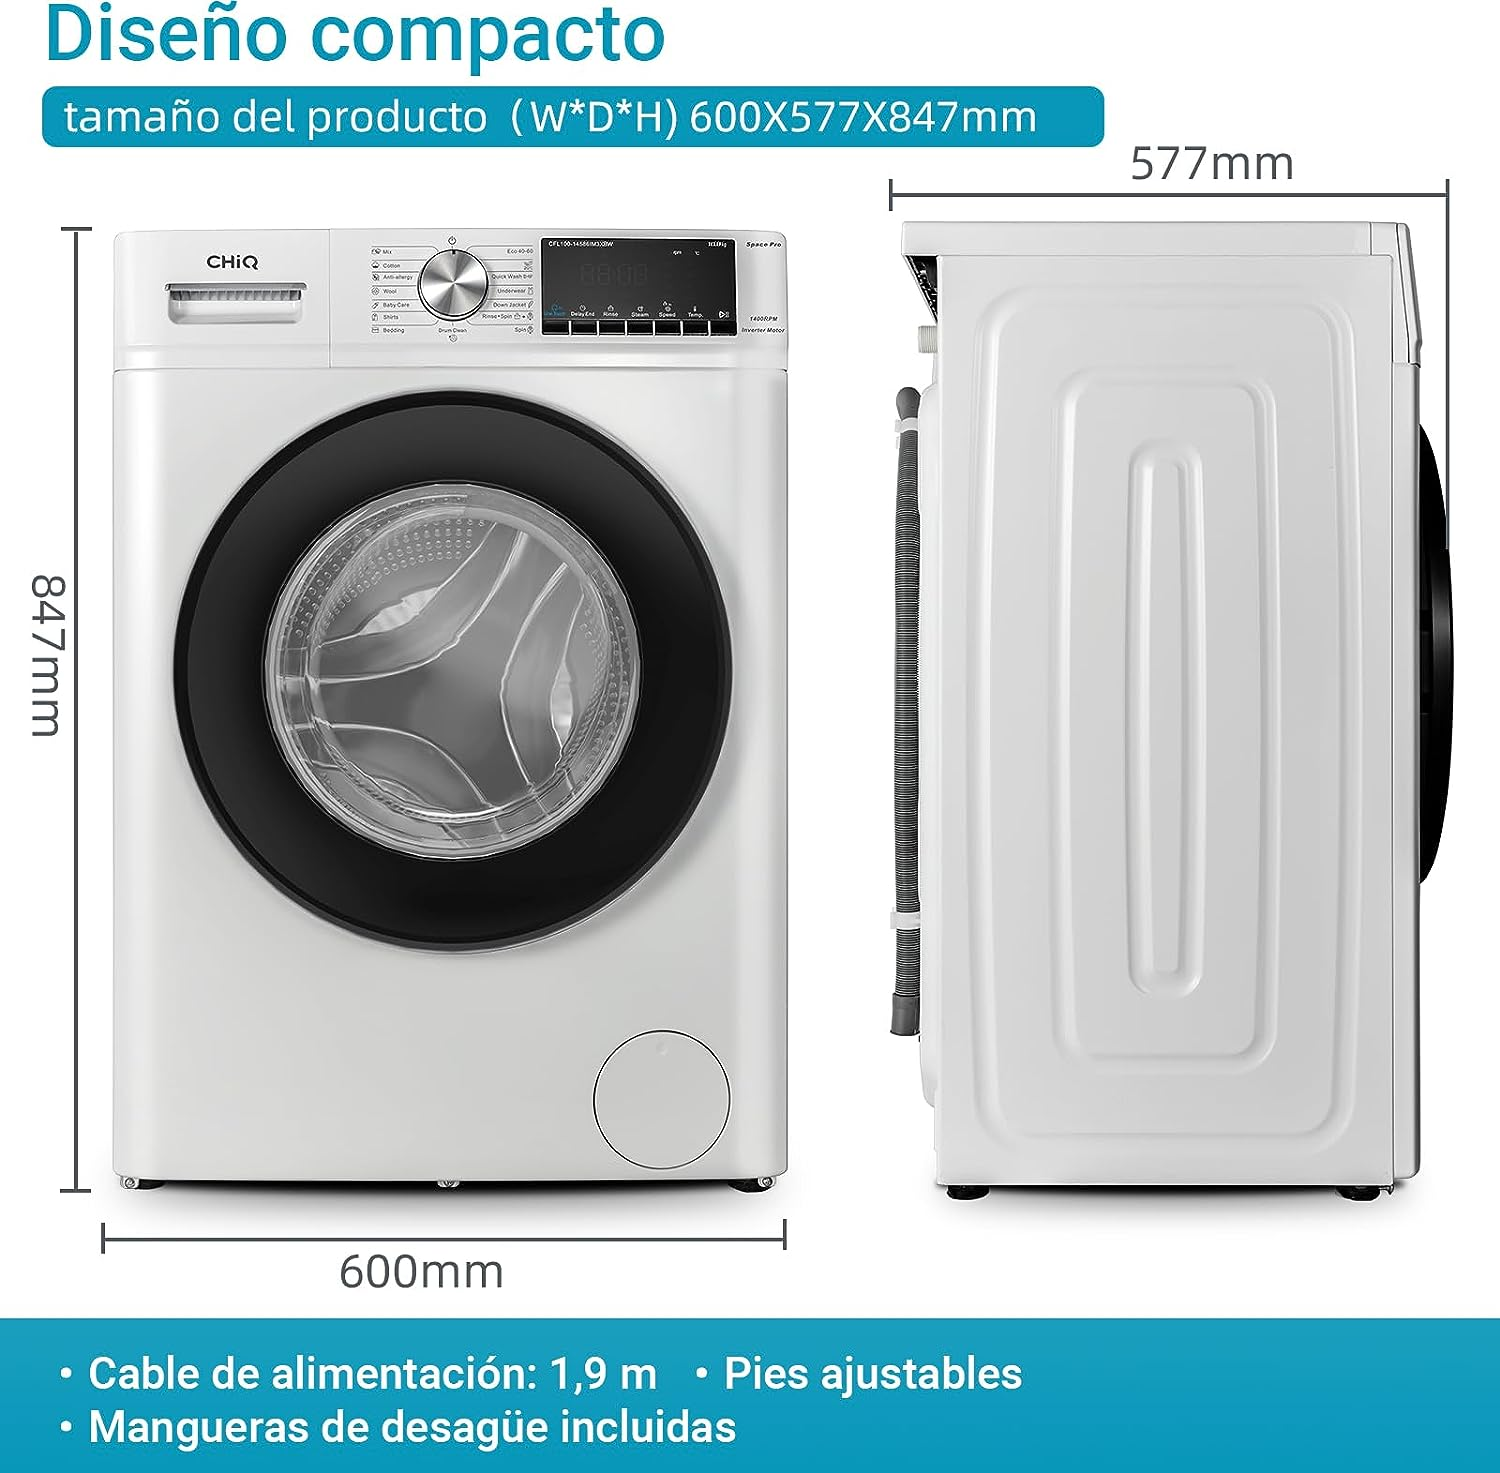 B) Frontlader-Waschmaschine 1400 CFL100-14586IM3XBW U/Min., CHIQ (10 kg,